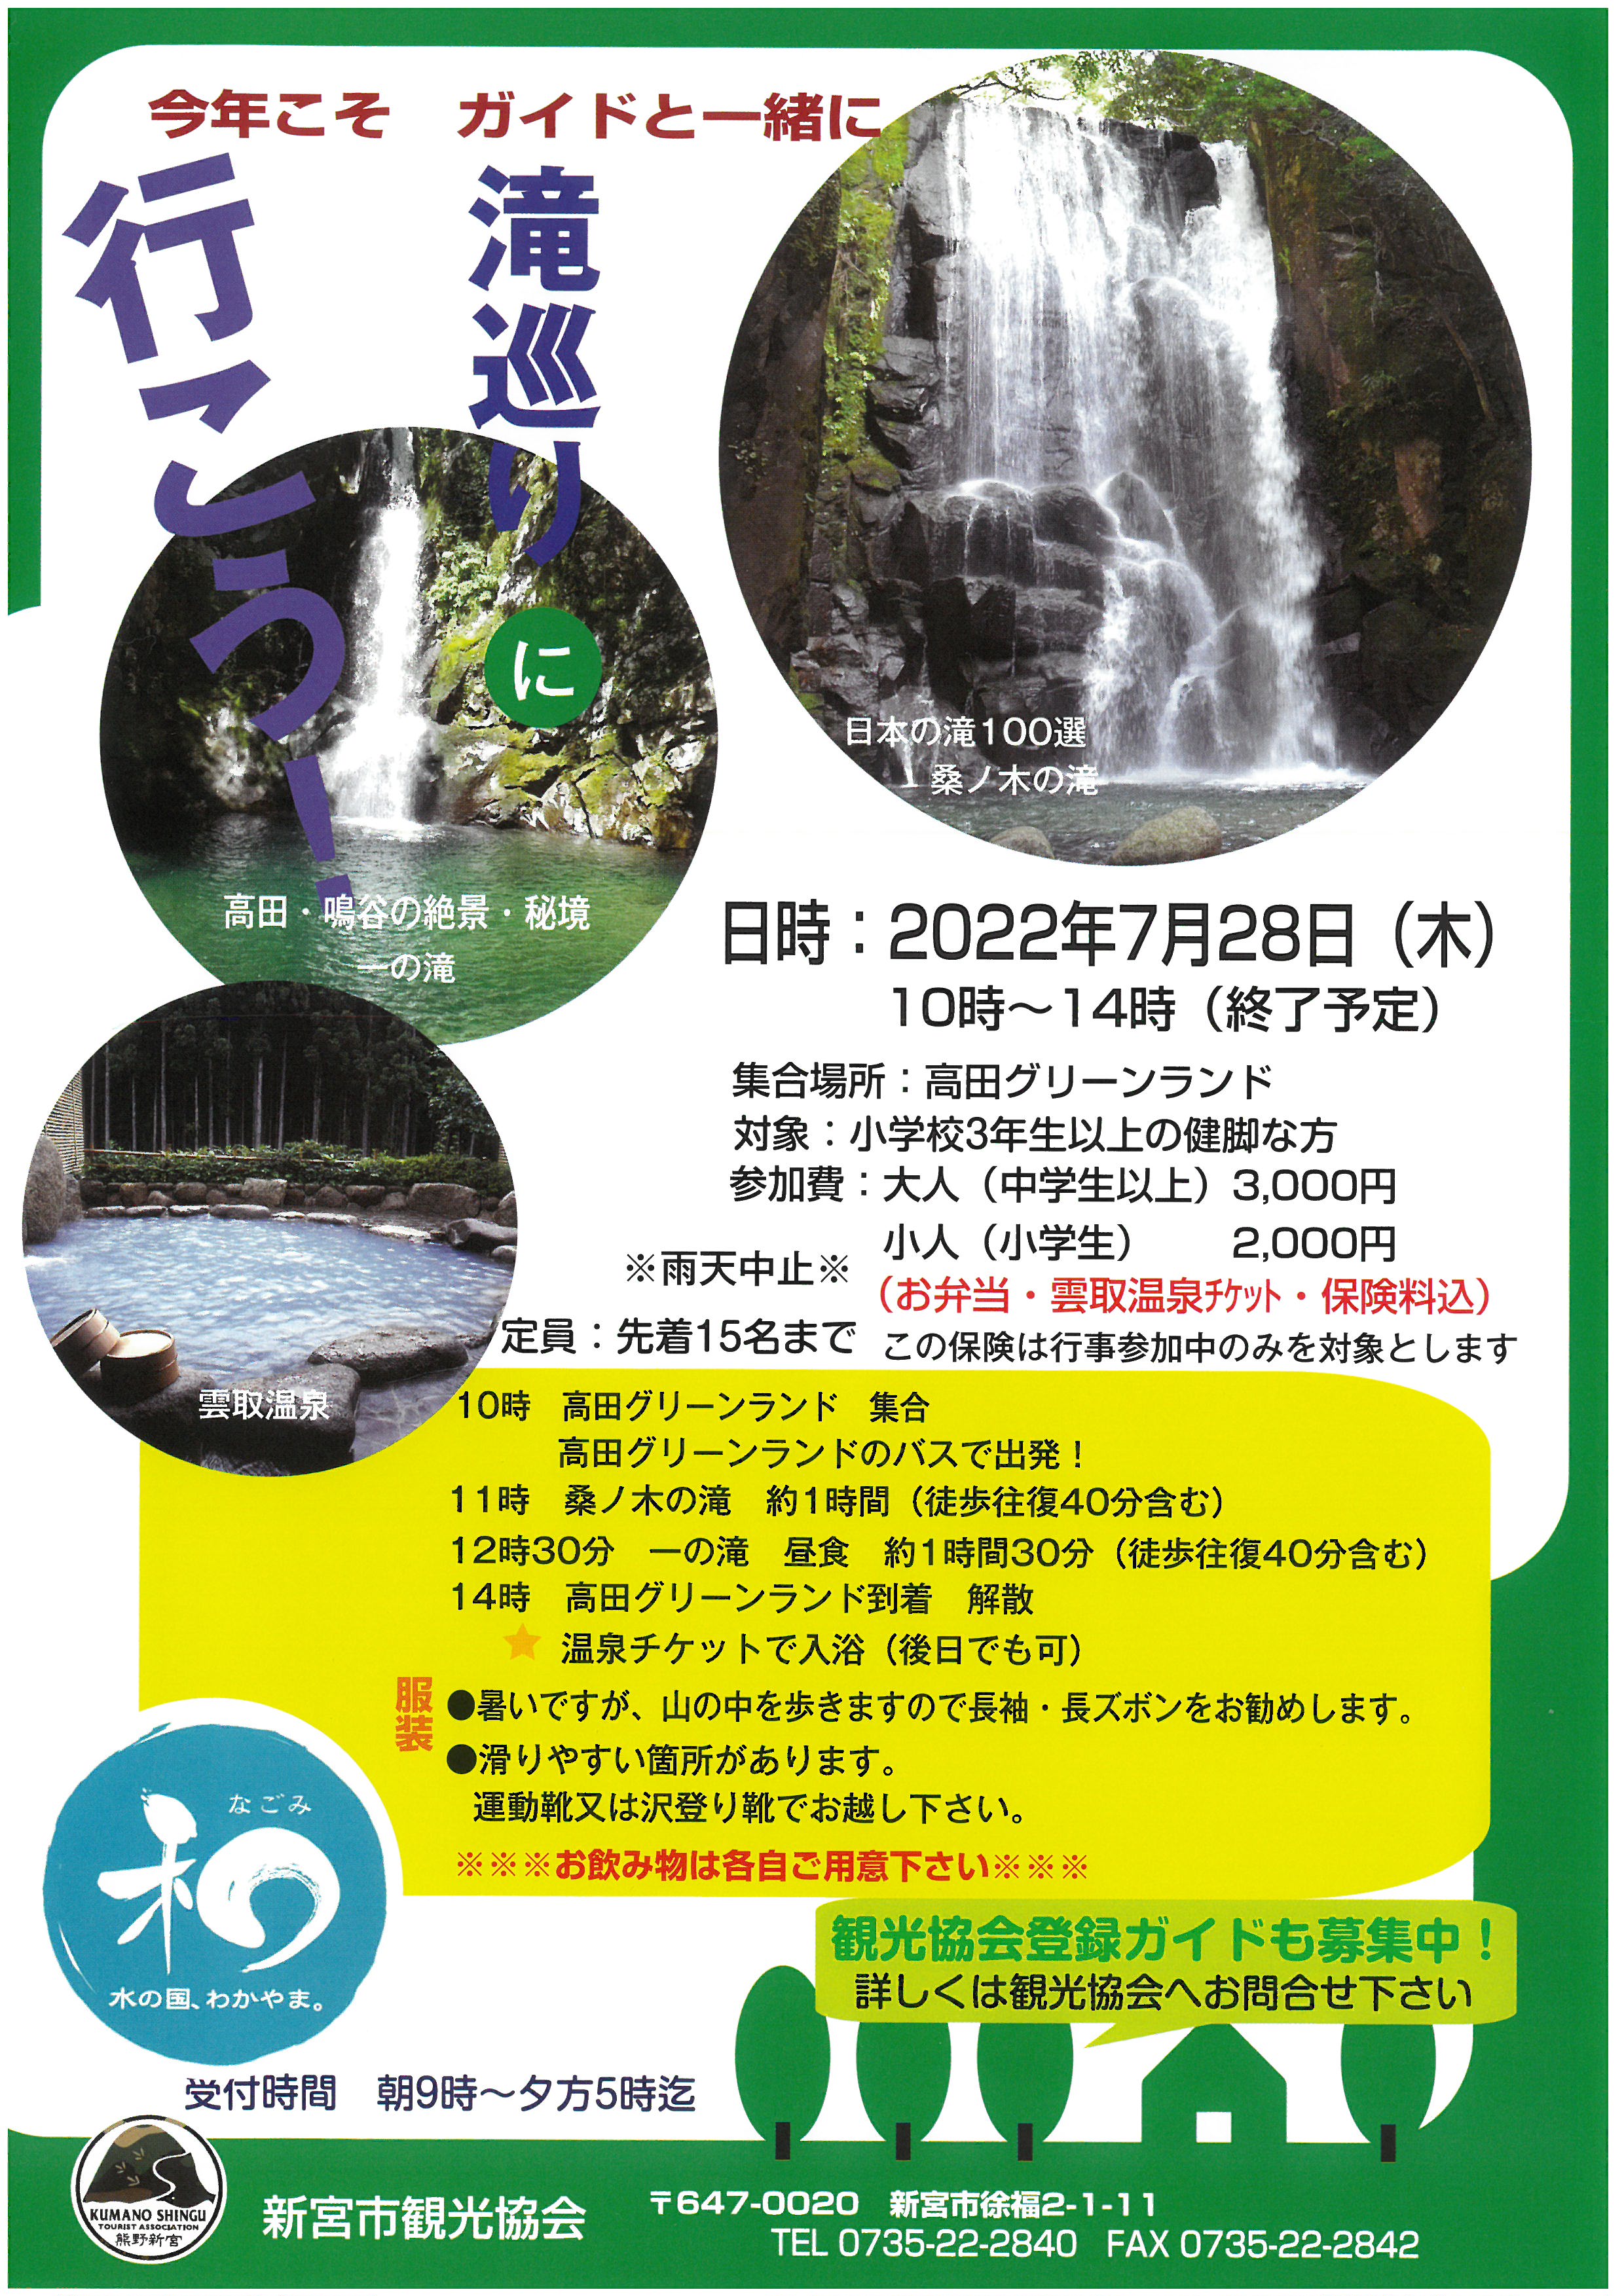 滝巡りツアーの開催について※中止